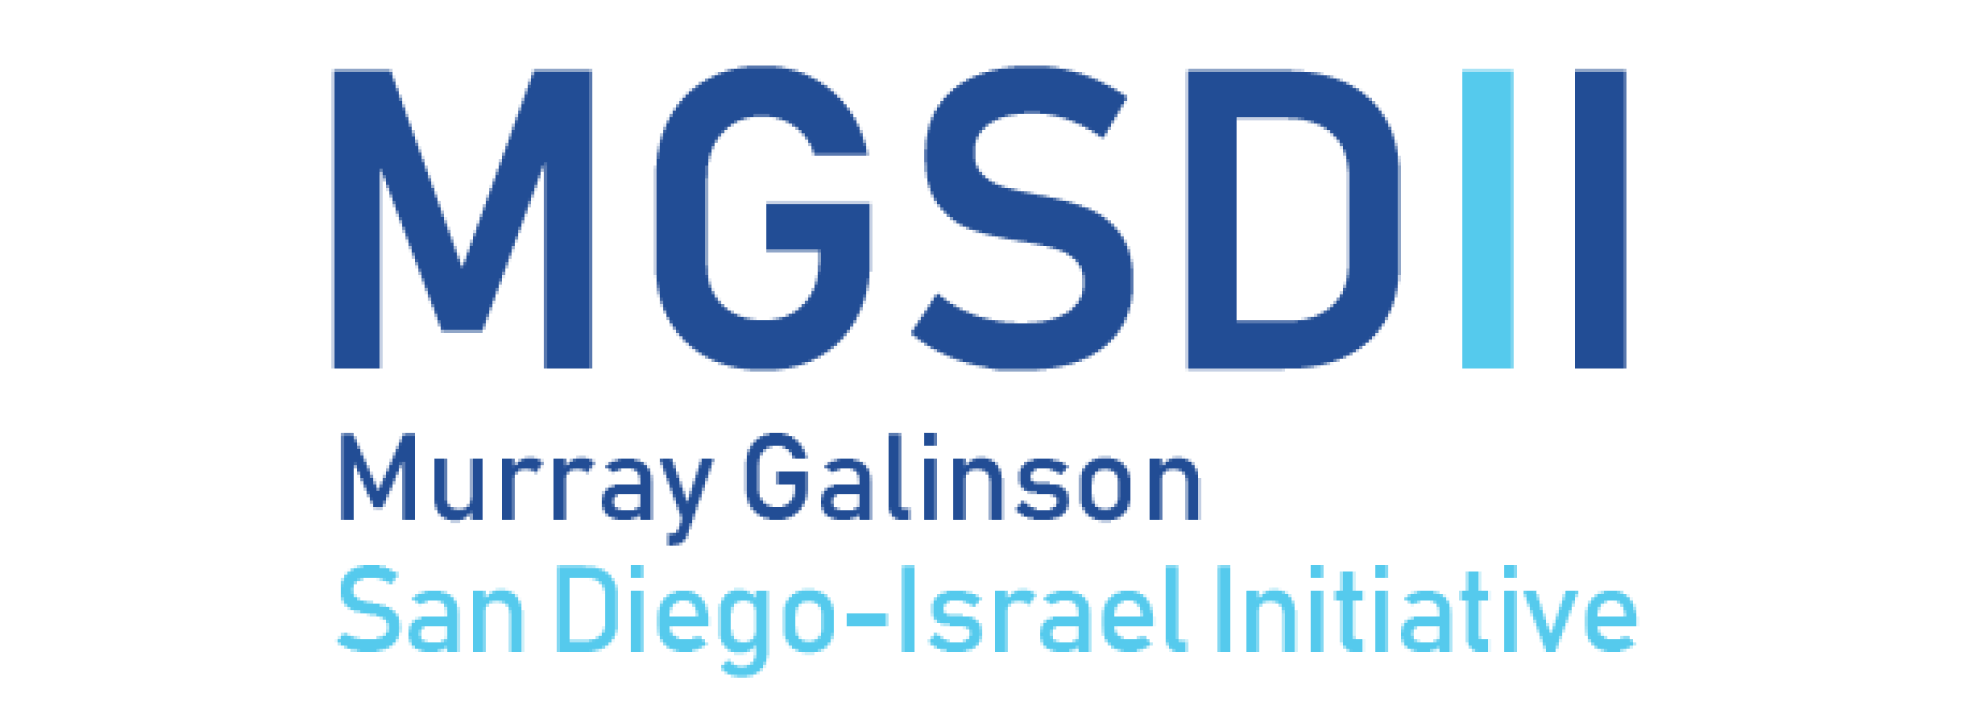 MGSDII-Logo.png